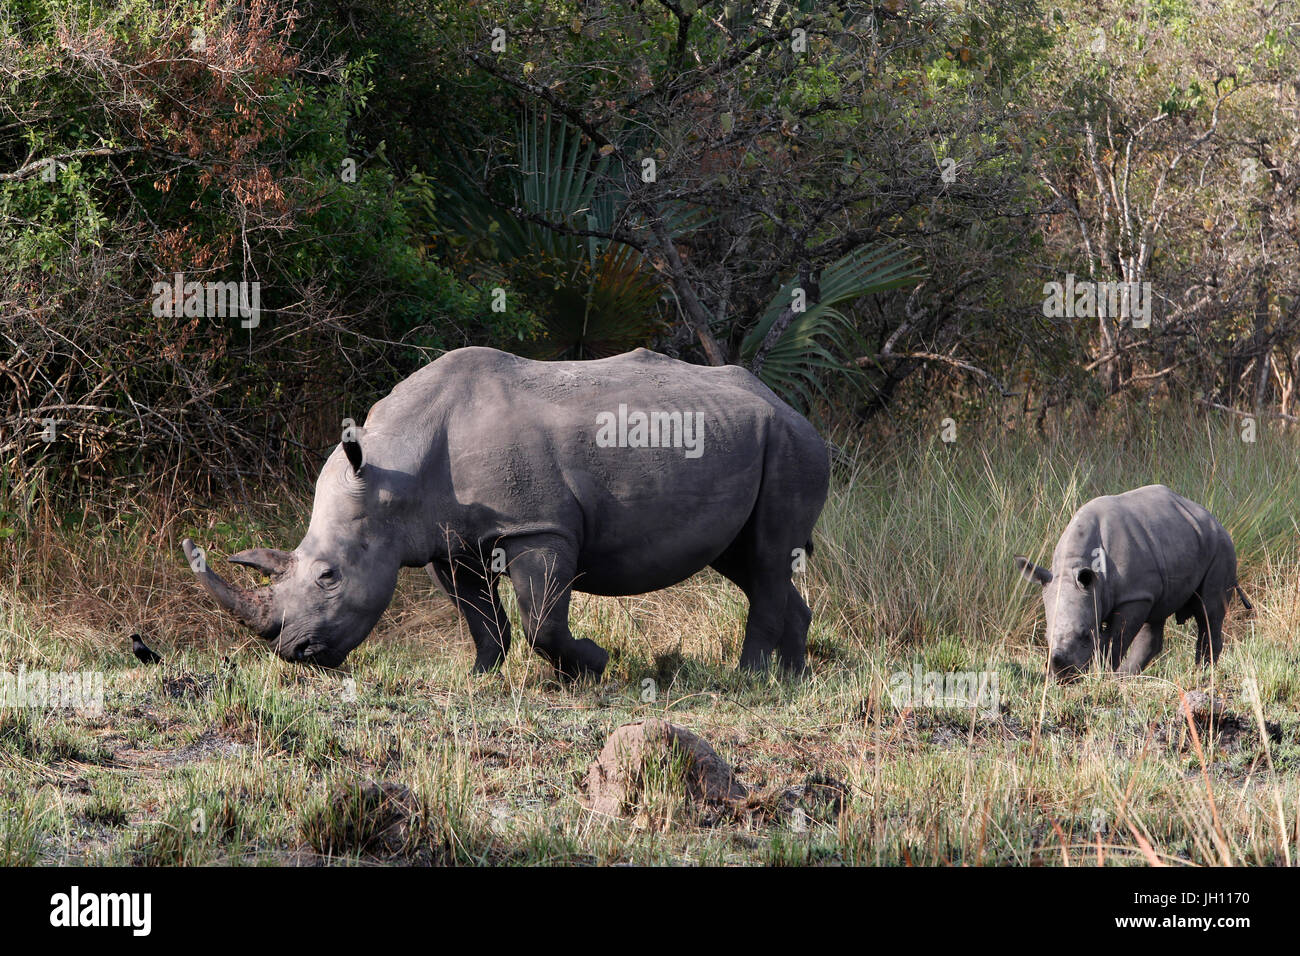 Rhinoceroses in Ziwa national park. Uganda. Stock Photo